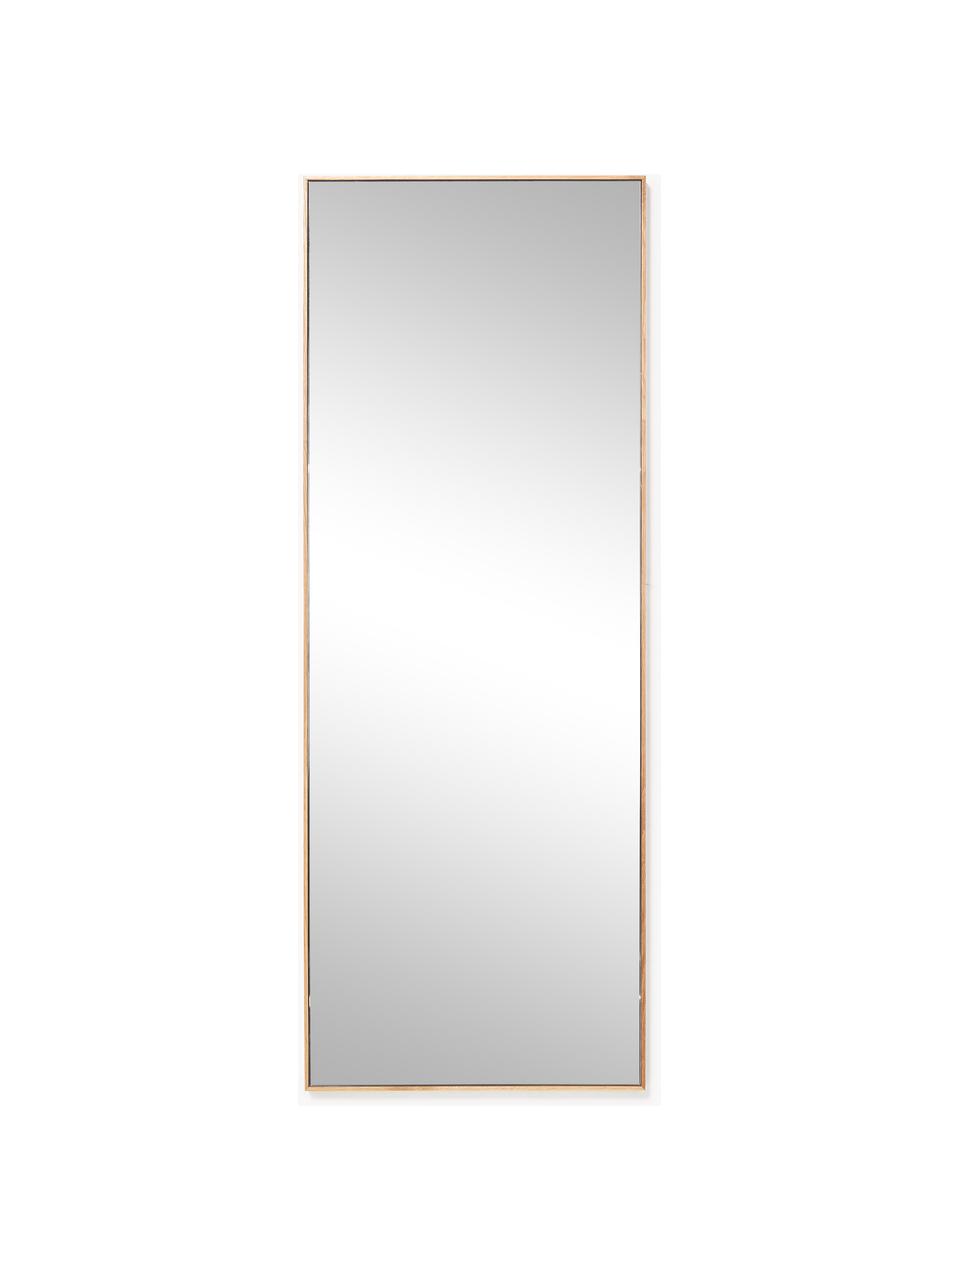 Specchio rettangolare da parete con cornice in legno di quercia Avery, Cornice: legno di quercia, Superficie dello specchio: lastra di vetro Questo pr, Legno di quercia, Larg. 60 x Alt. 160 cm